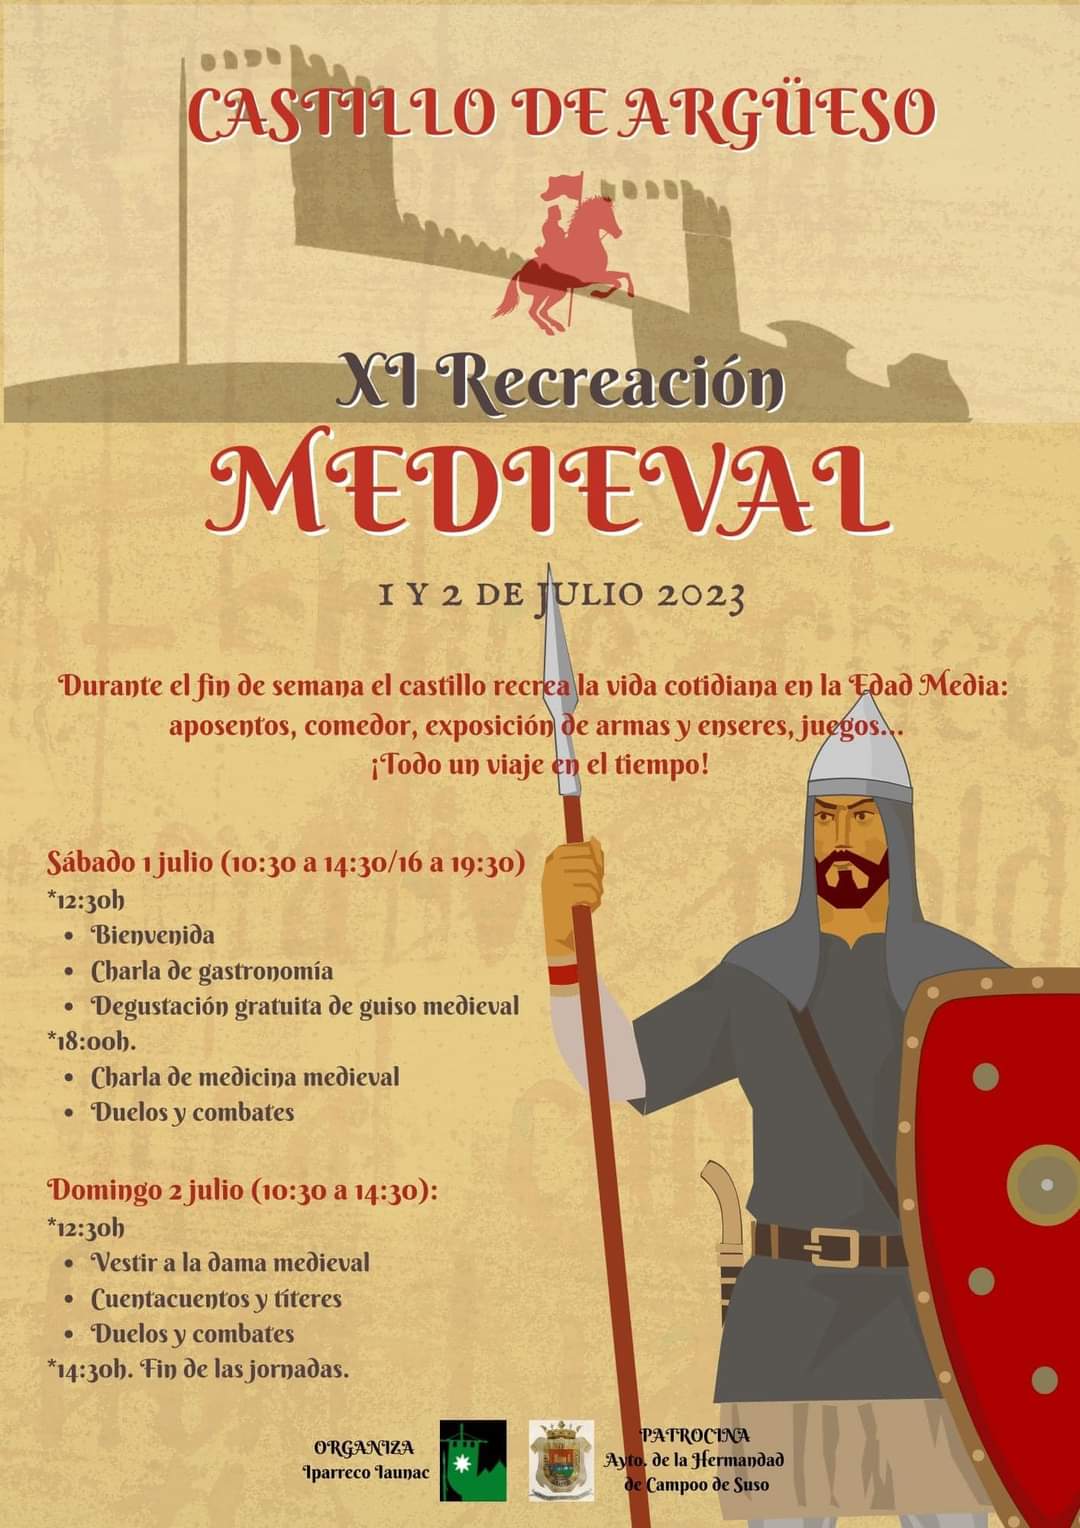 XI Recreación Medieval – Castillo de Argüeso